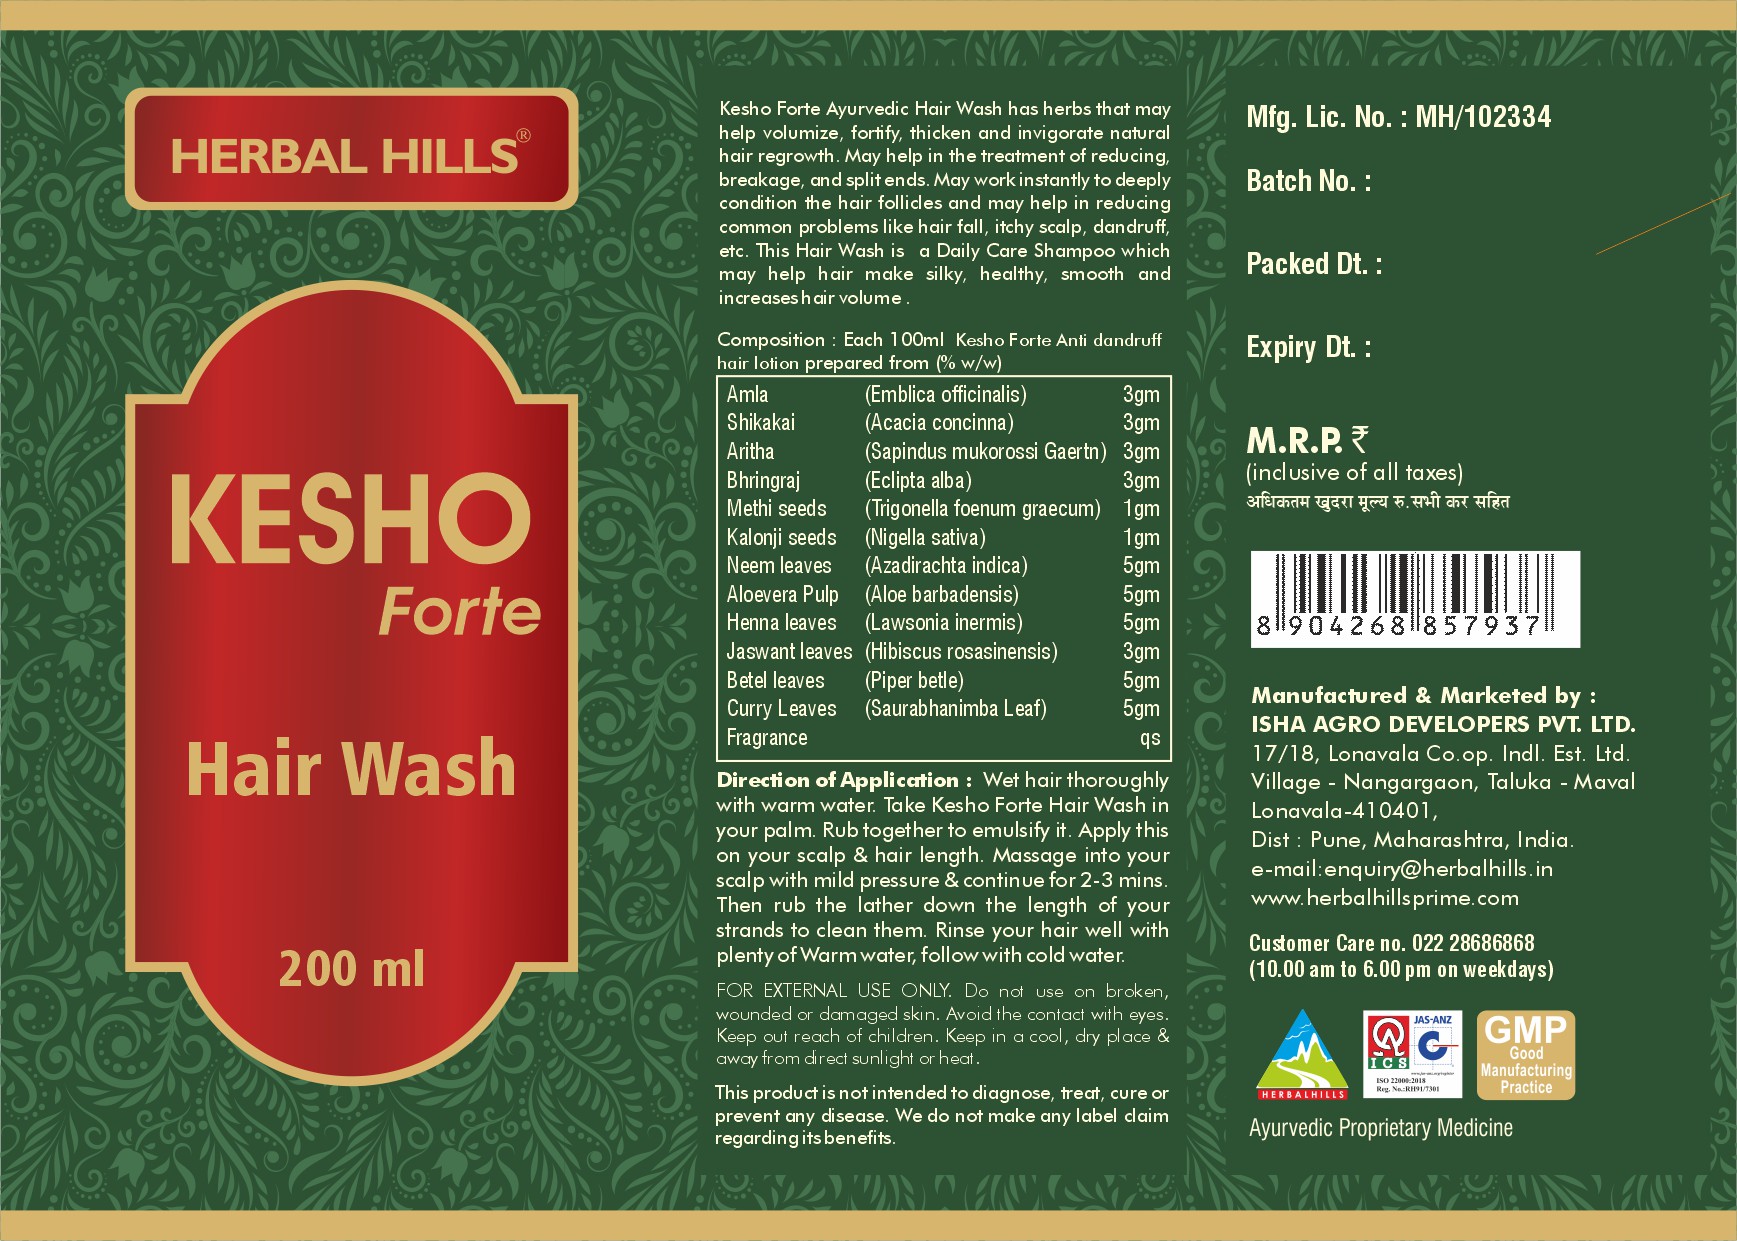 Buy Herbal Hills Kesho Forte Hair Wash at Best Price Online